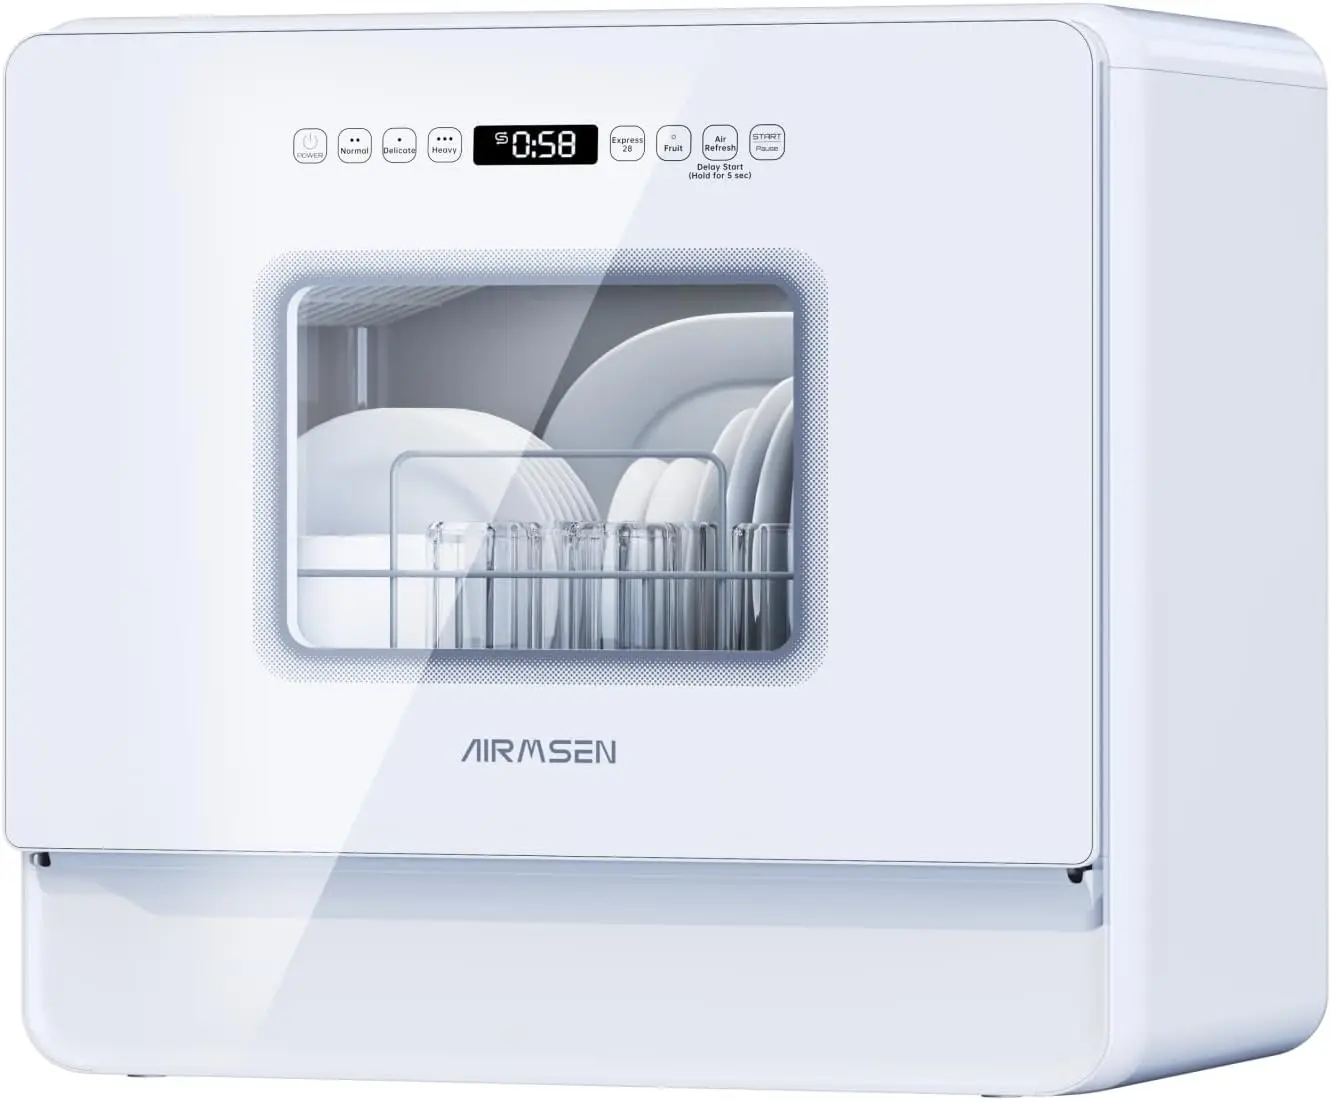 

Портативная Рабочая посудомоечная машина, 2-уровневая стойка, 7 программ, 3 распылителя на 360 °, 167 ℉ с высокой температурой и функцией сушки на воздухе, стандартное сенсорное управление